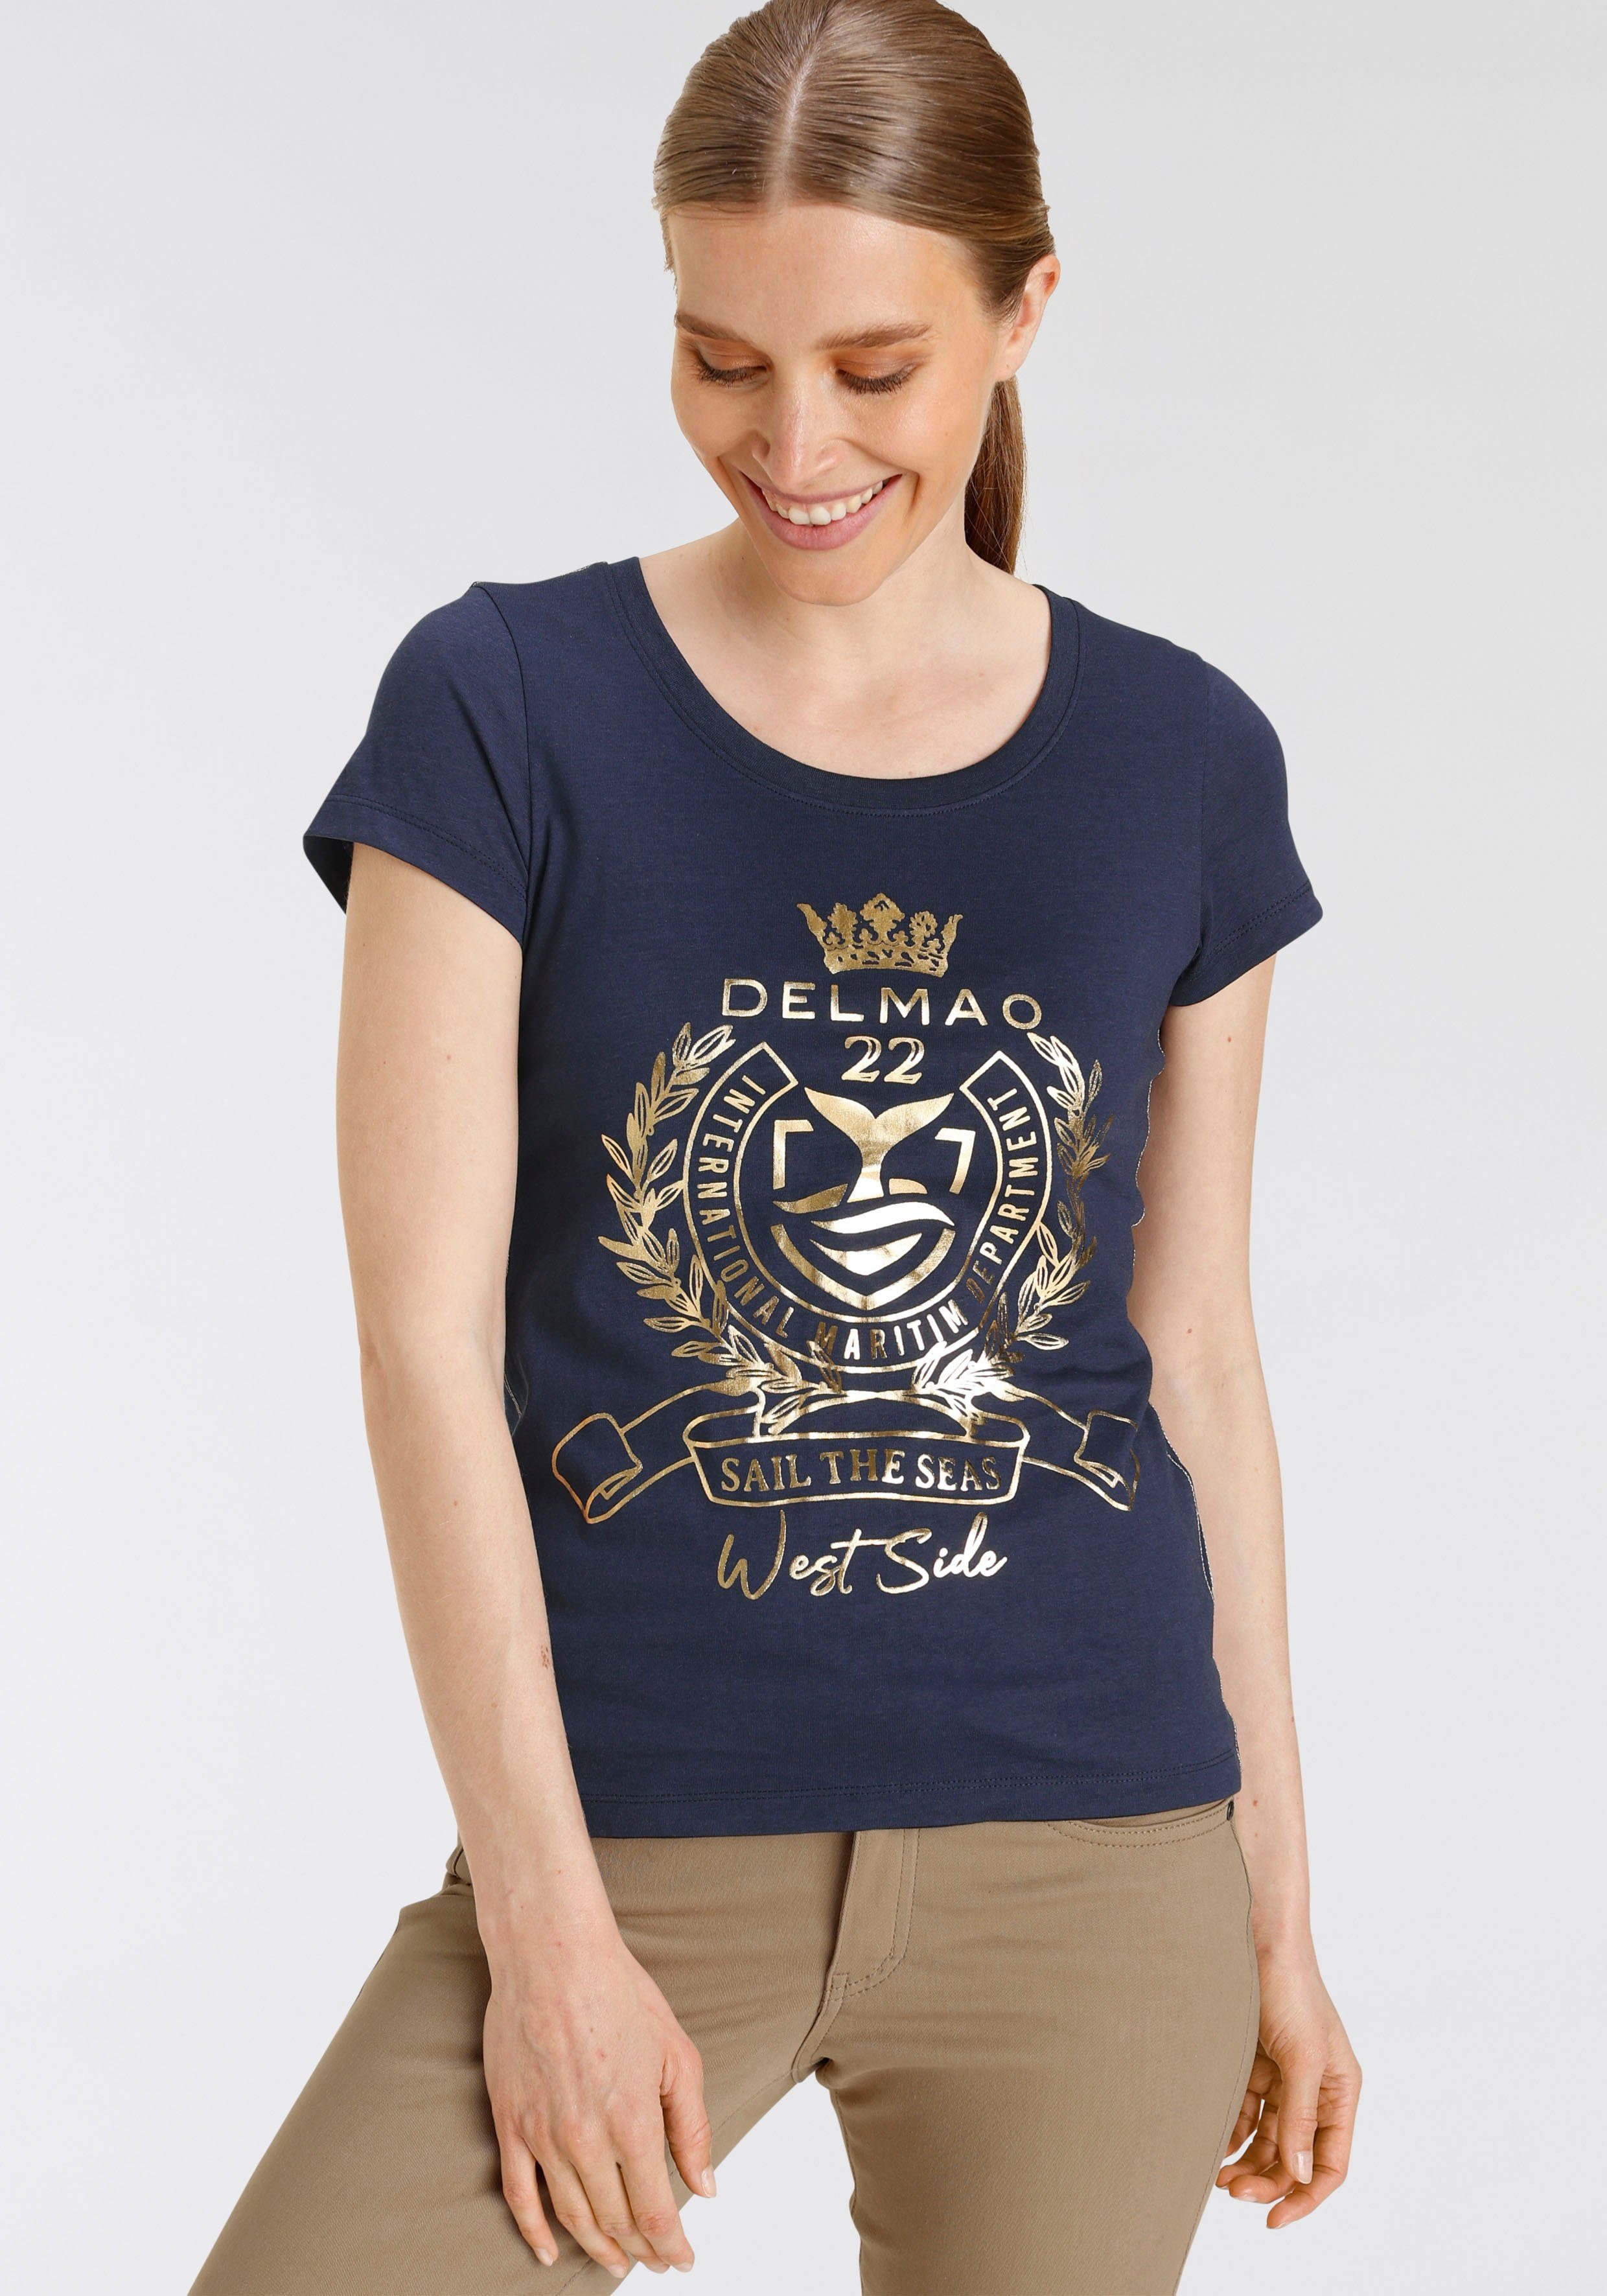 hochwertigem, DELMAO NEUE mit goldfarbenem MARKE! - T-Shirt Folienprint